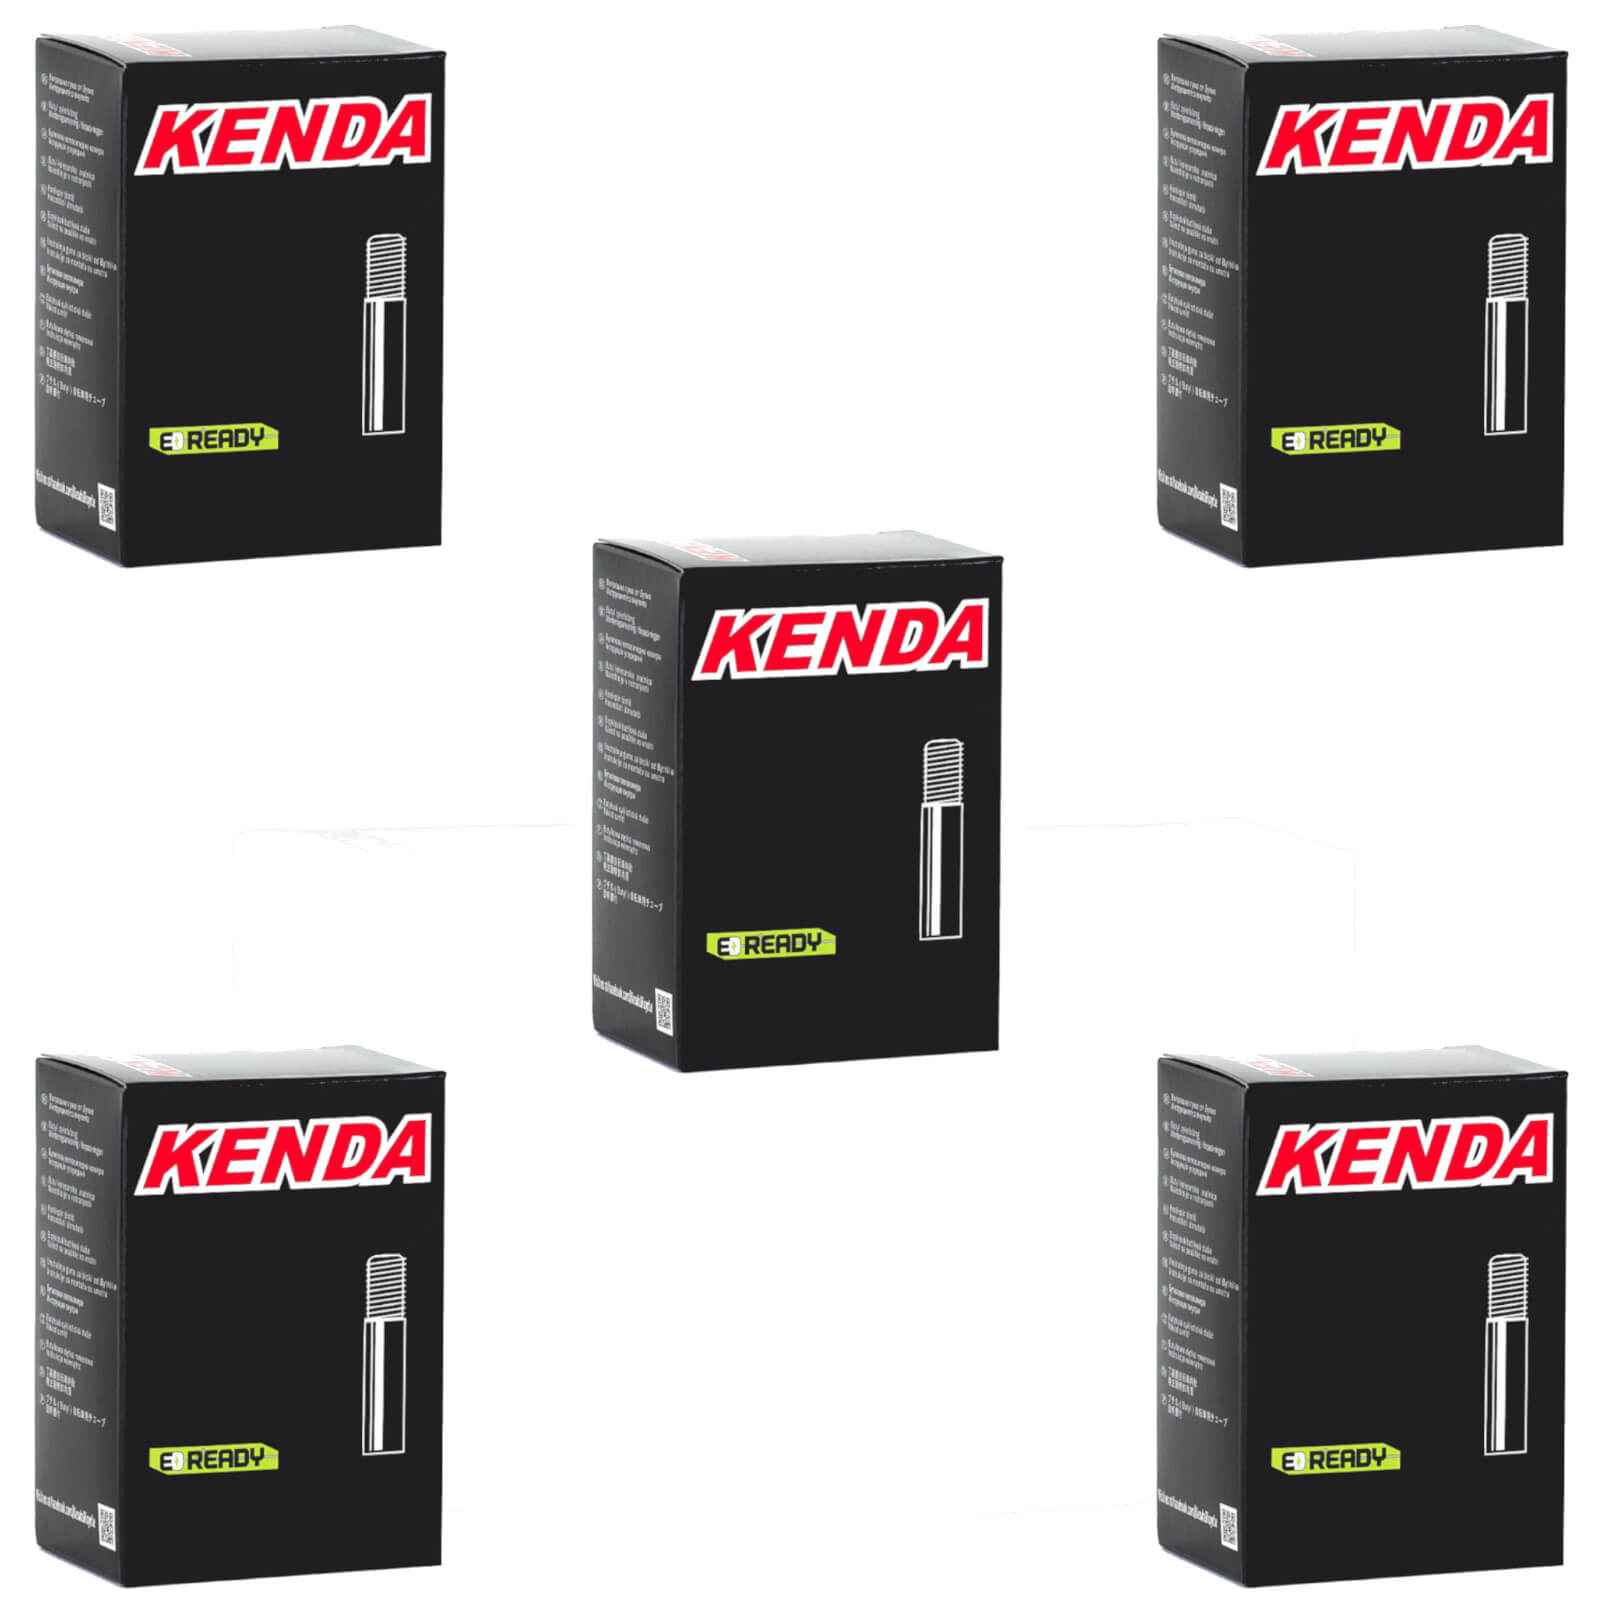 Kenda 26x1.75-2.35" 26 Inch Schrader Valve Bike Inner Tube Pack of 5